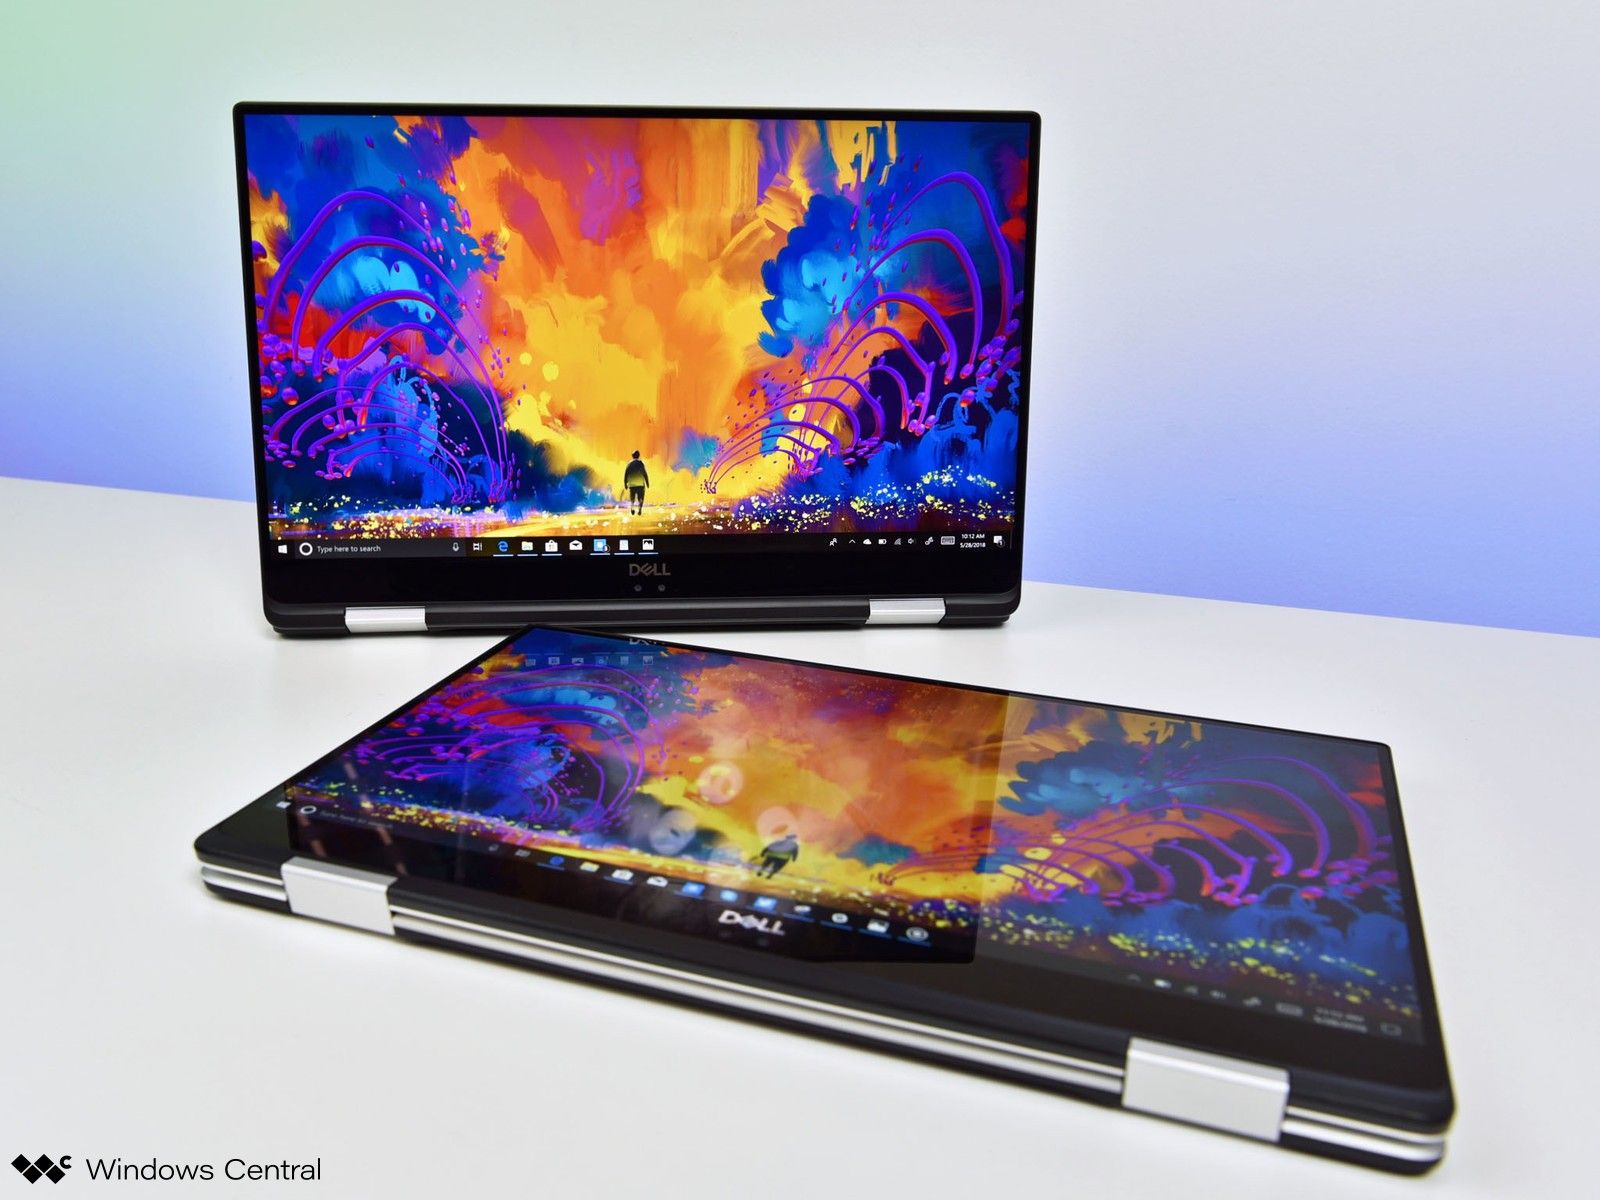 5 mẫu laptop Dell đáng mua nhất trong năm 2020